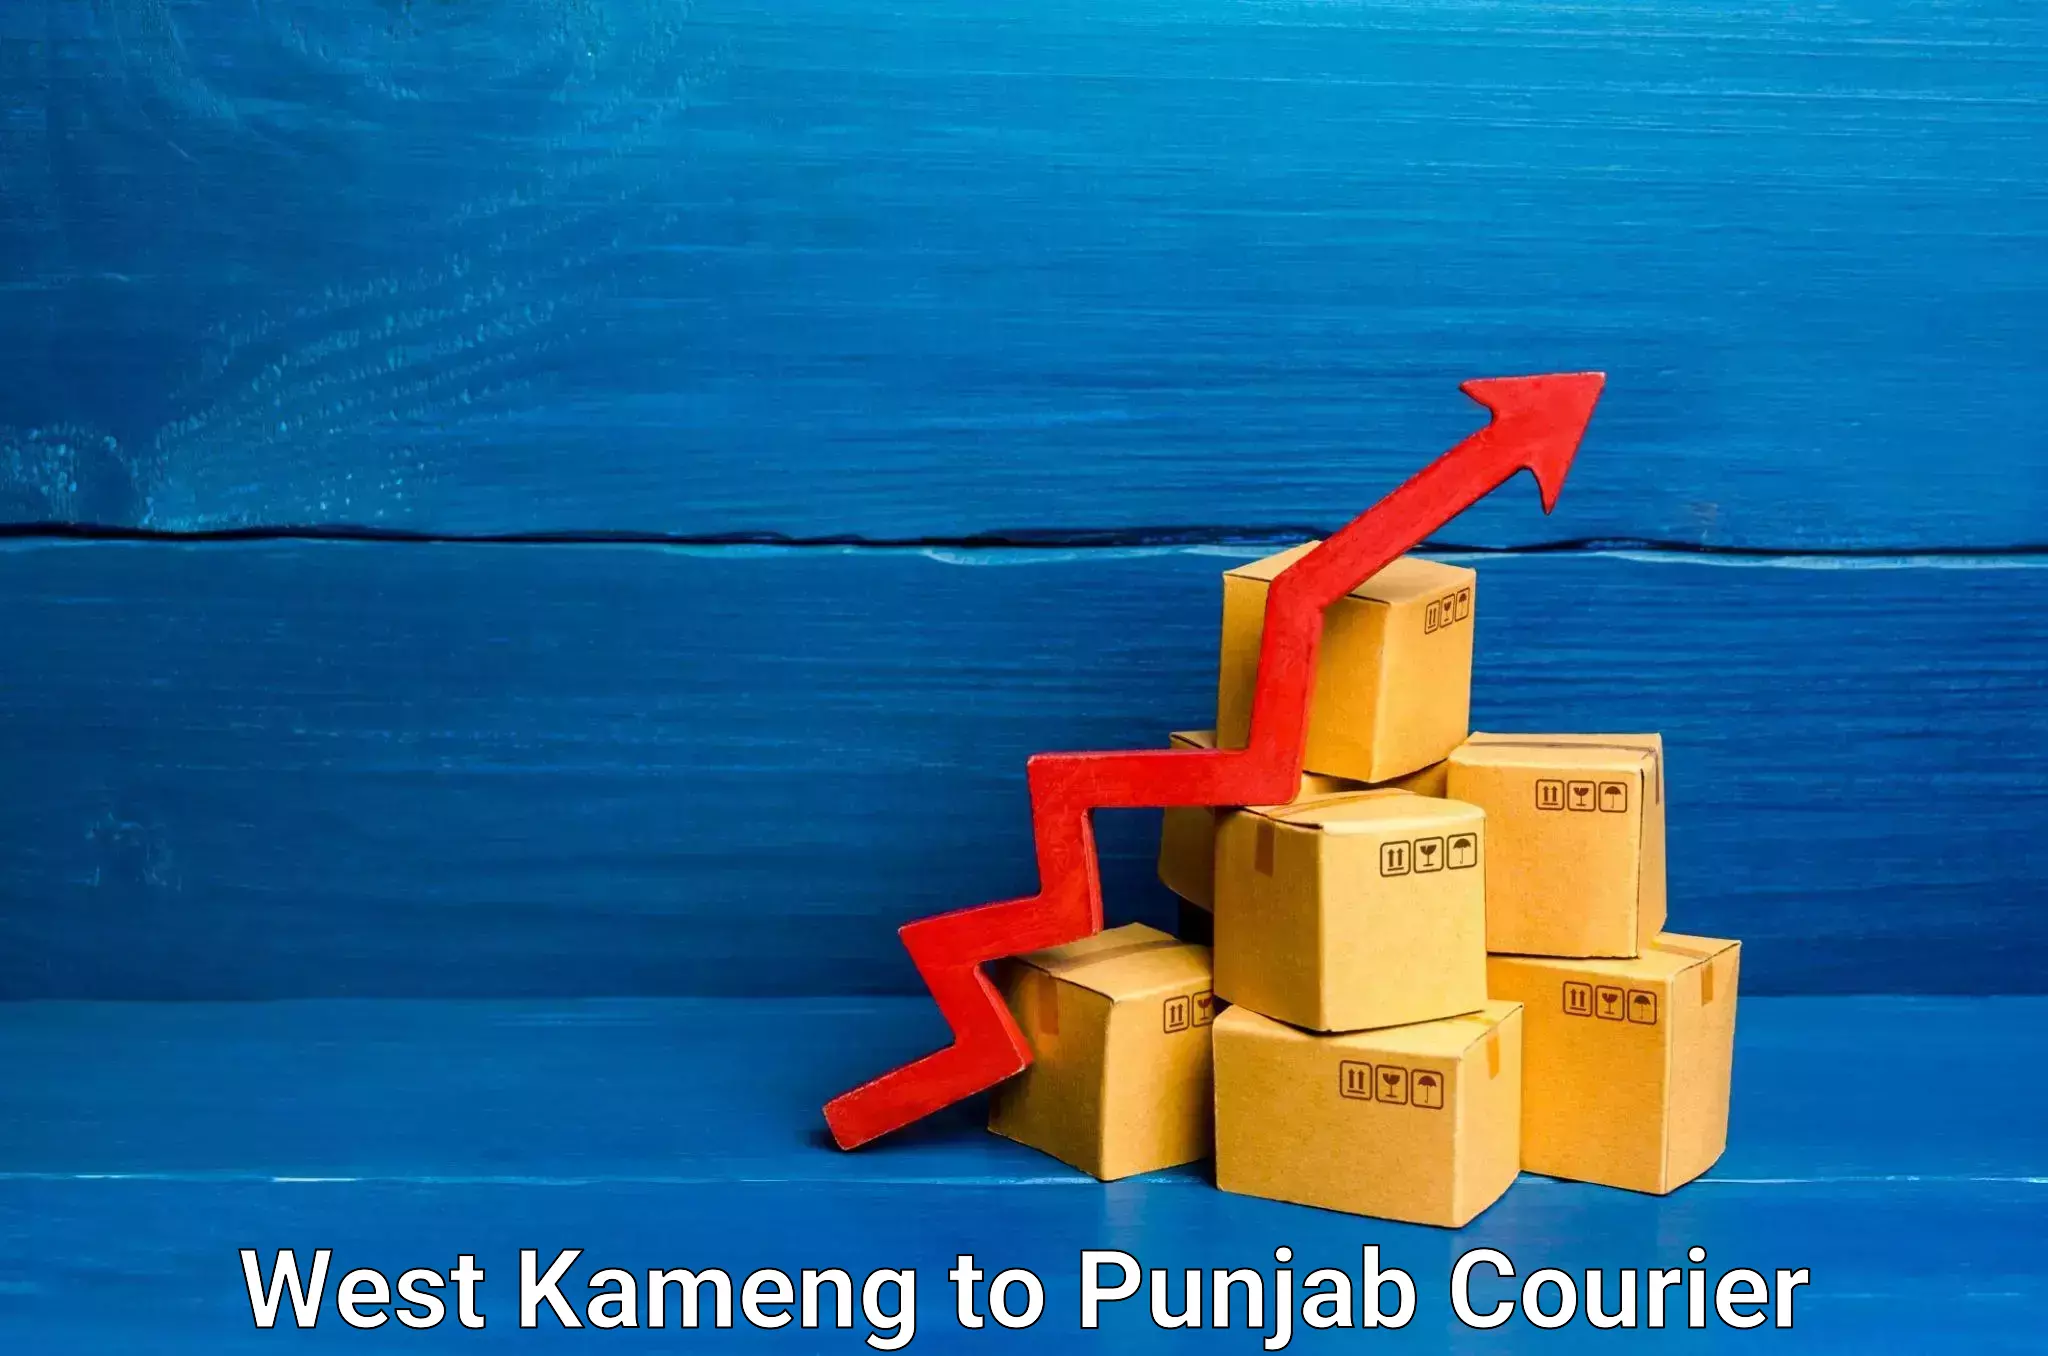 Digital courier platforms in West Kameng to Punjab